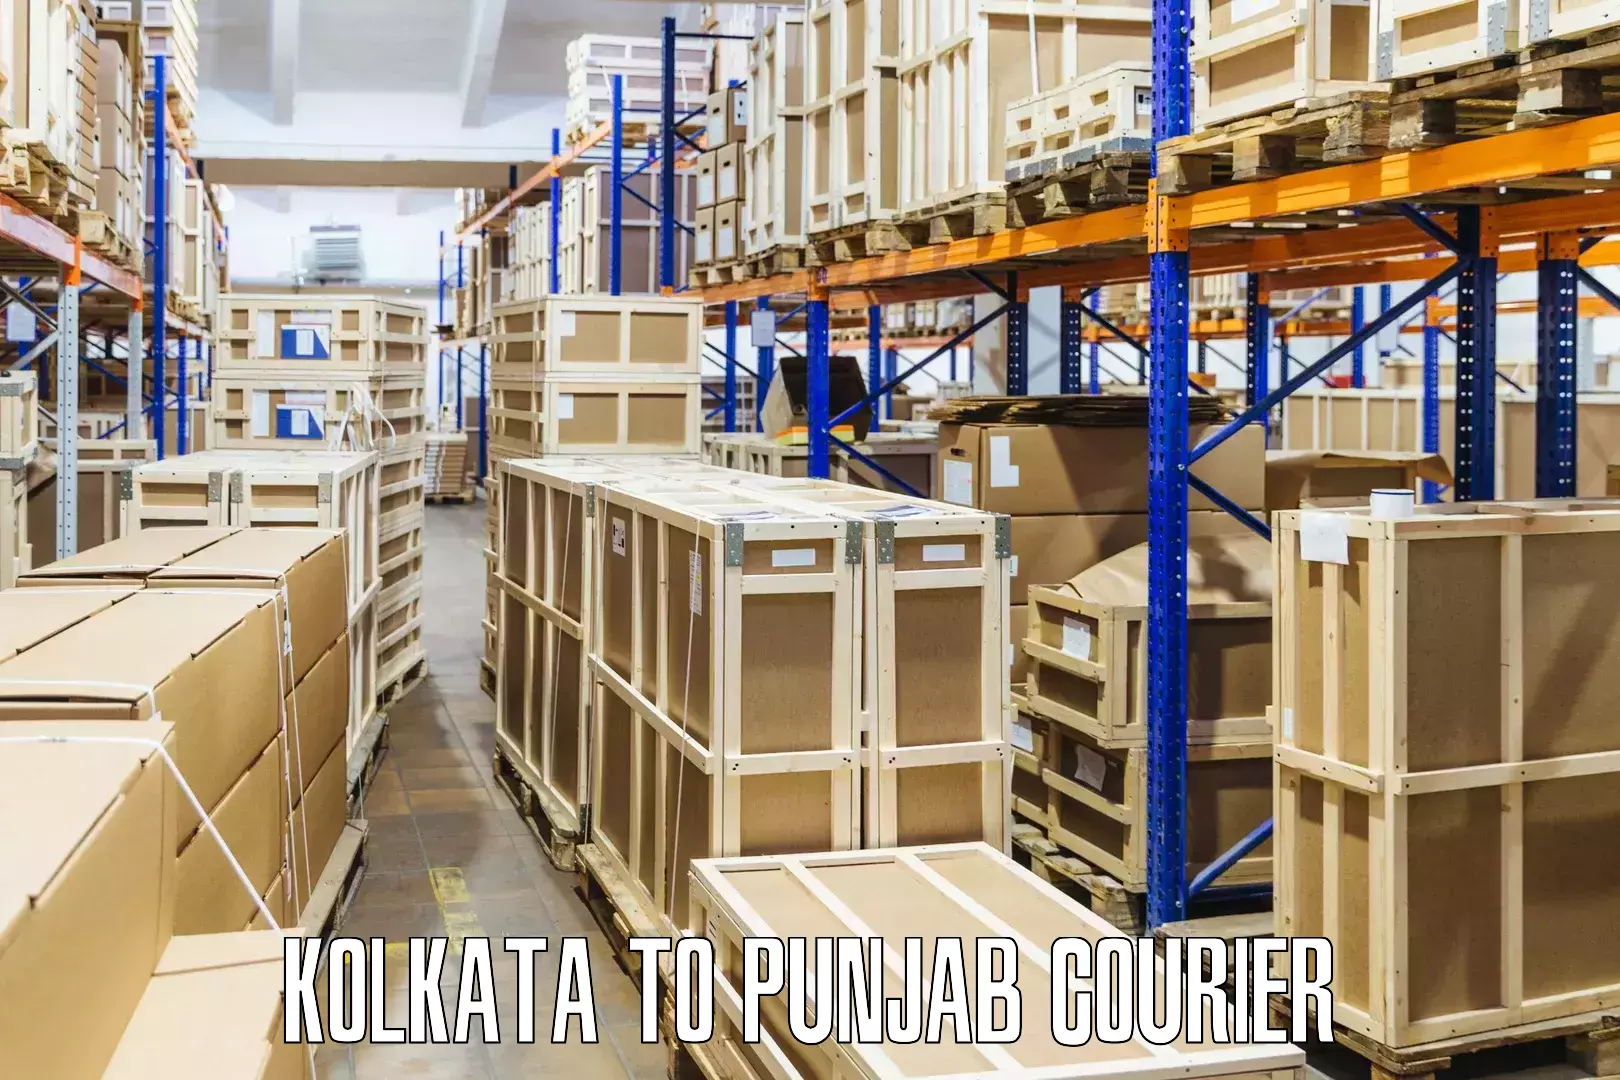 High-speed parcel service Kolkata to Talwara